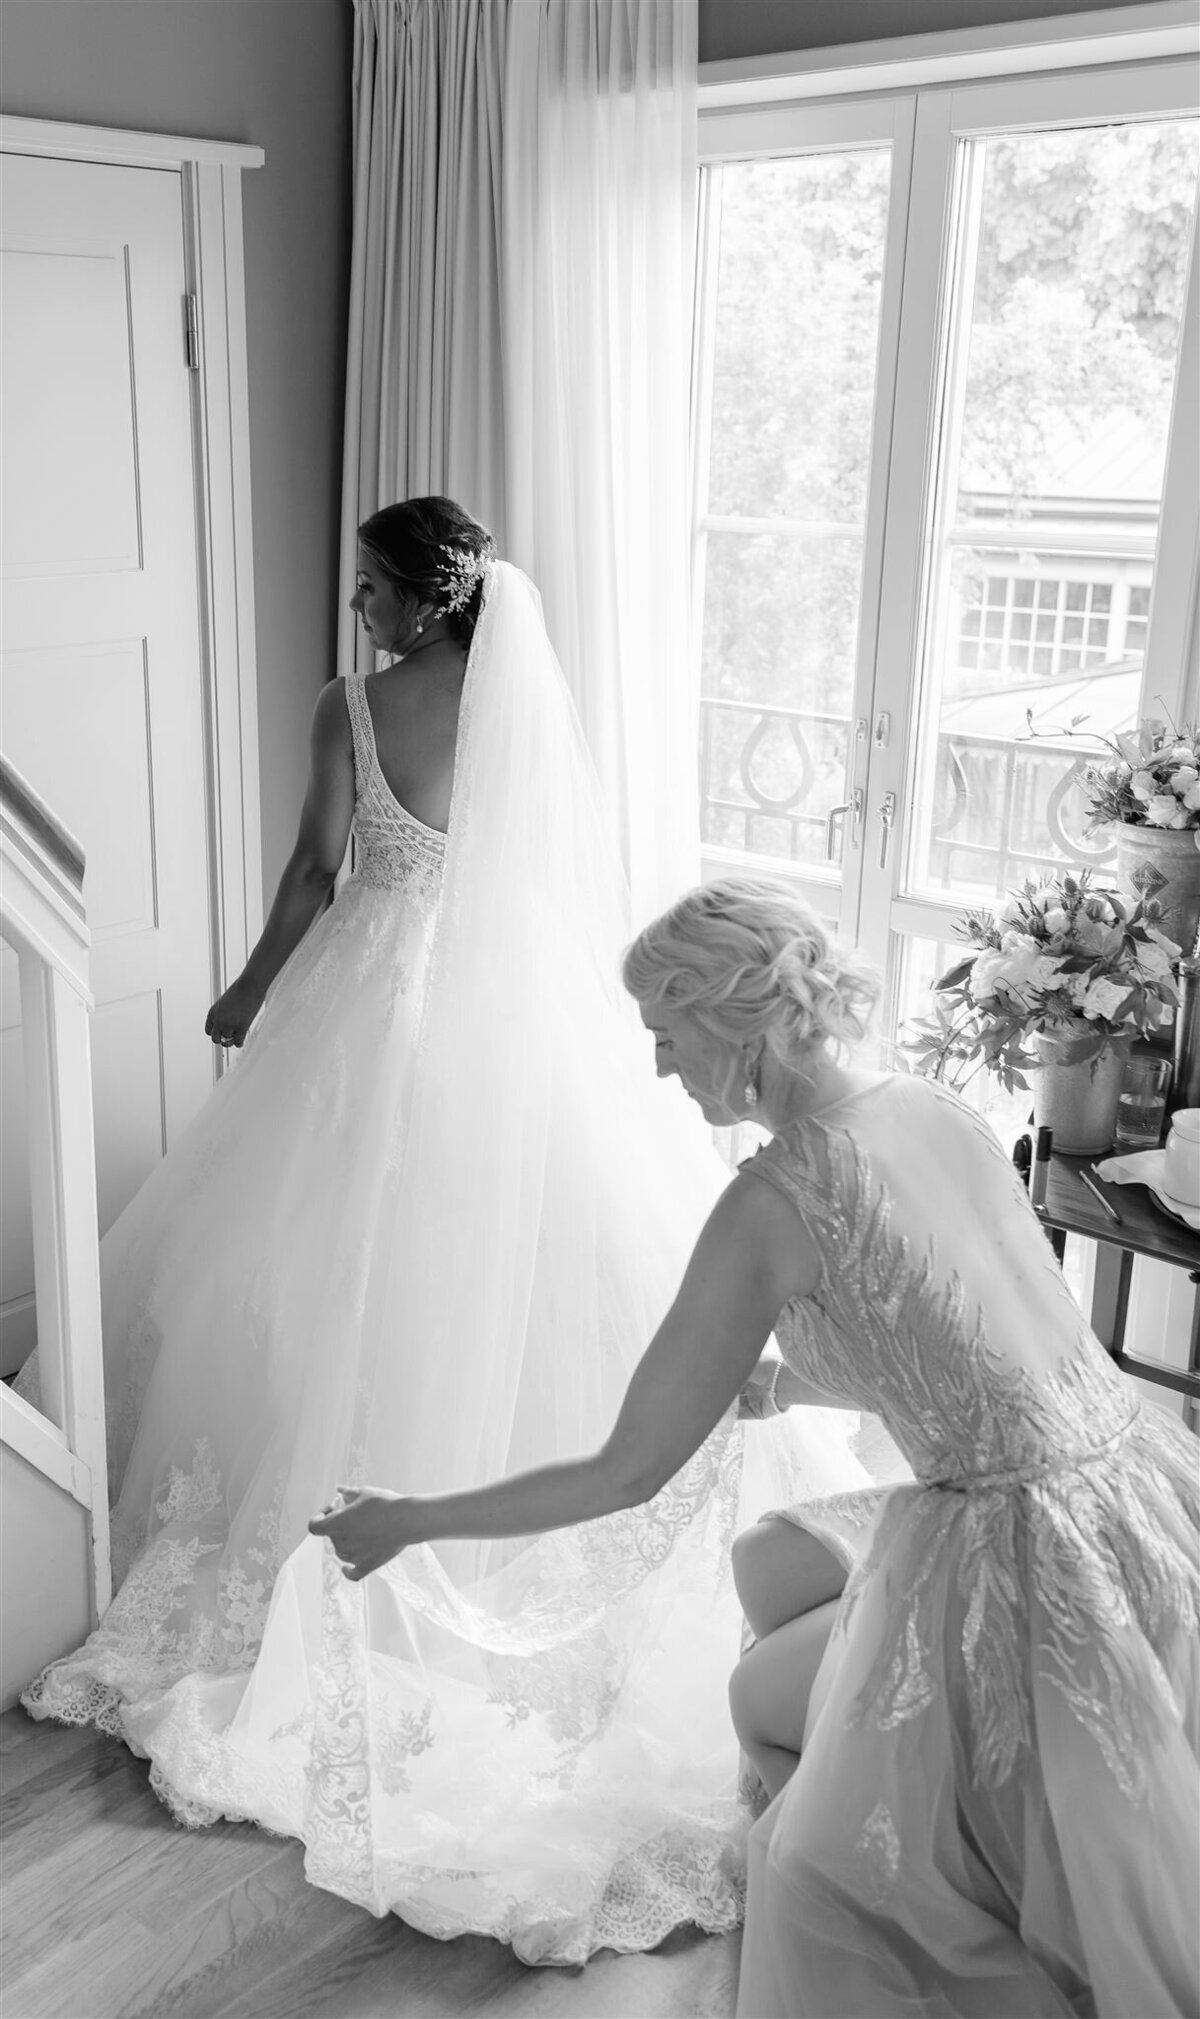 Wedding Photographer Anna Lundgren - helloalora_Wedding at Stallmästaregården in Stockholm Sweden39